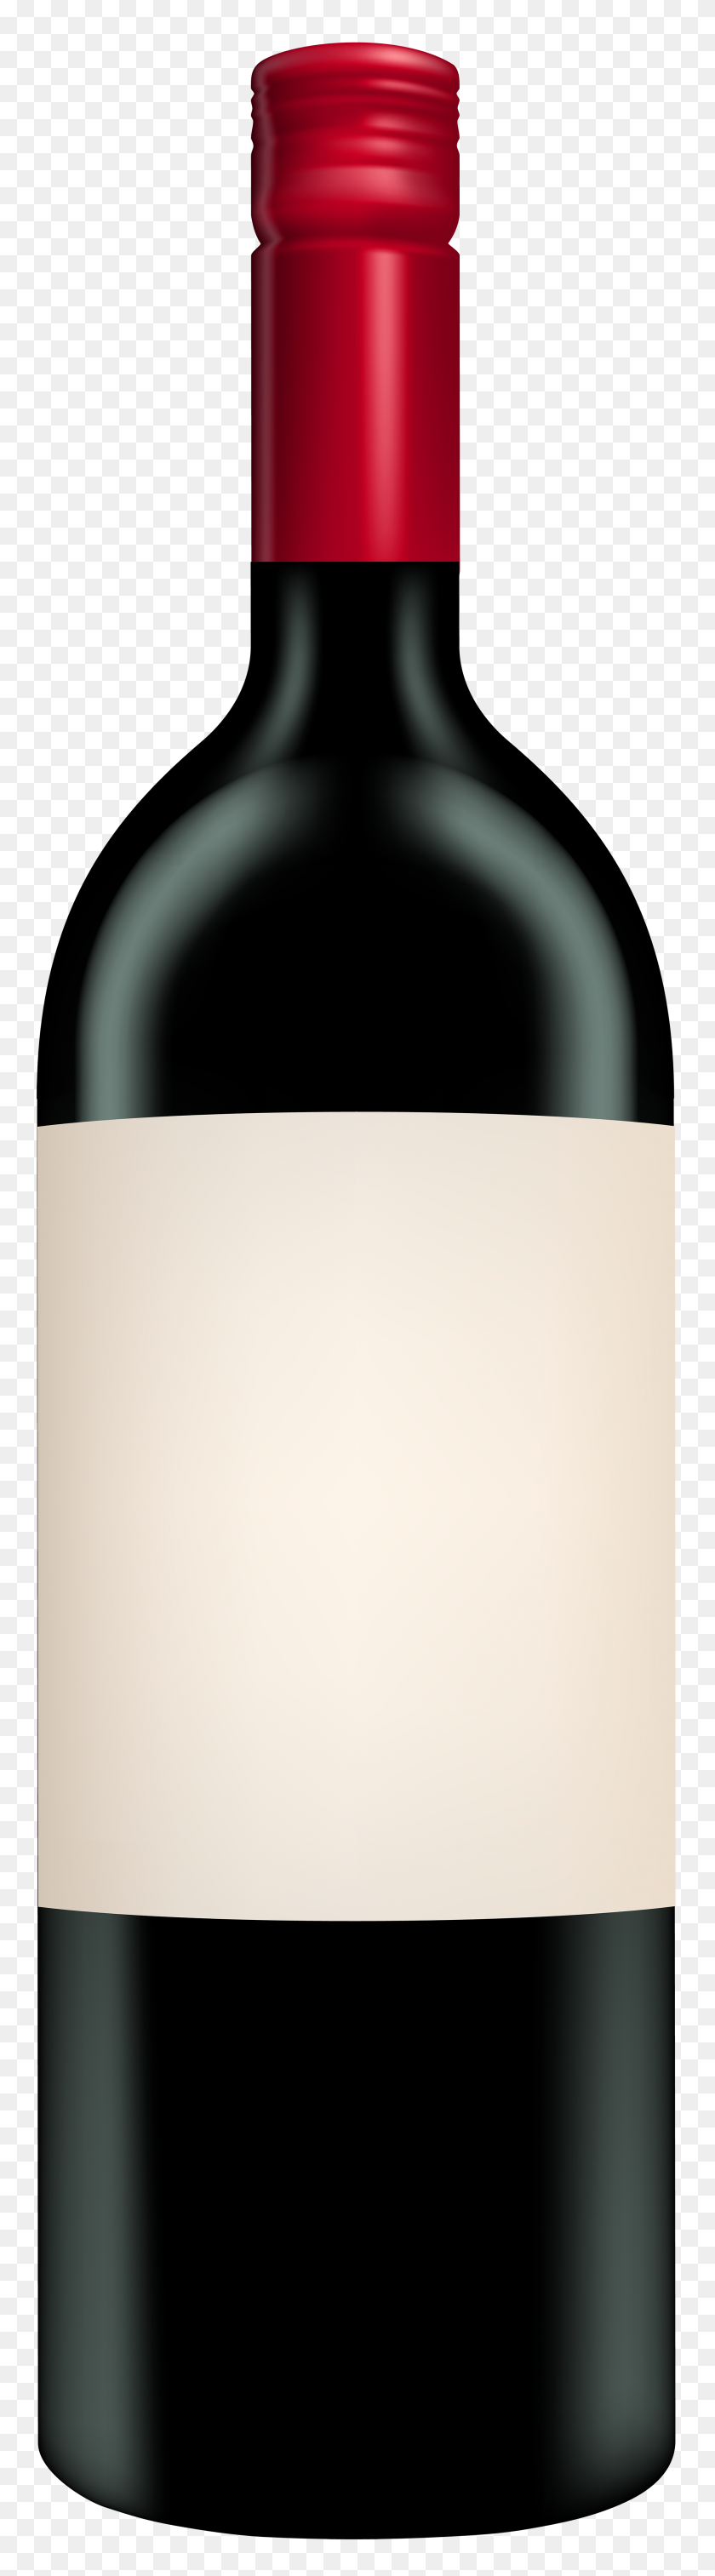 2103x8000 Bottle Of Red Wine Clip Art - Wine Bottle Clip Art Free